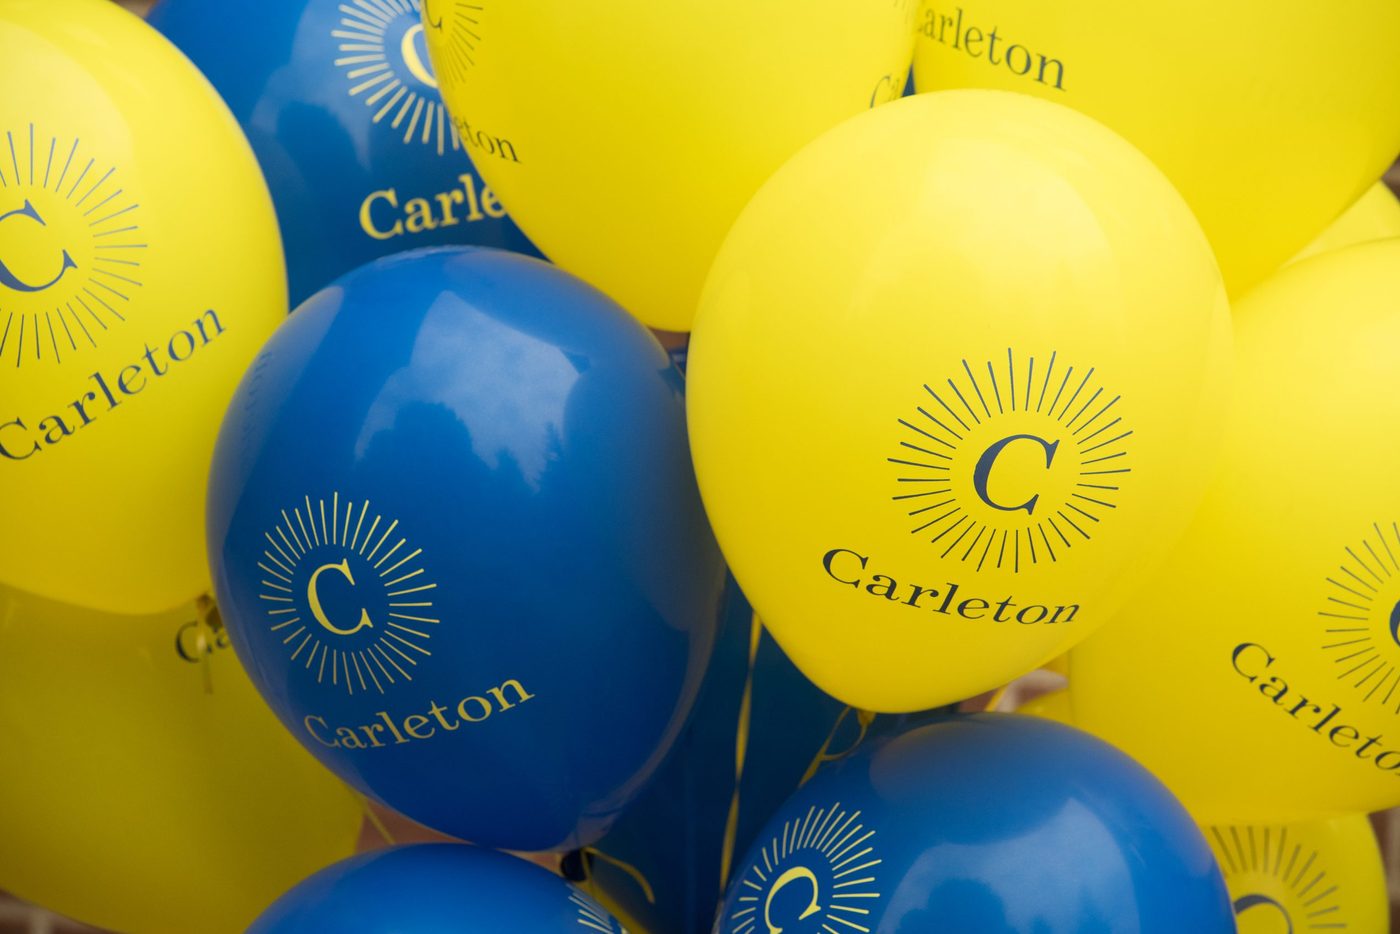 Carleton balloons